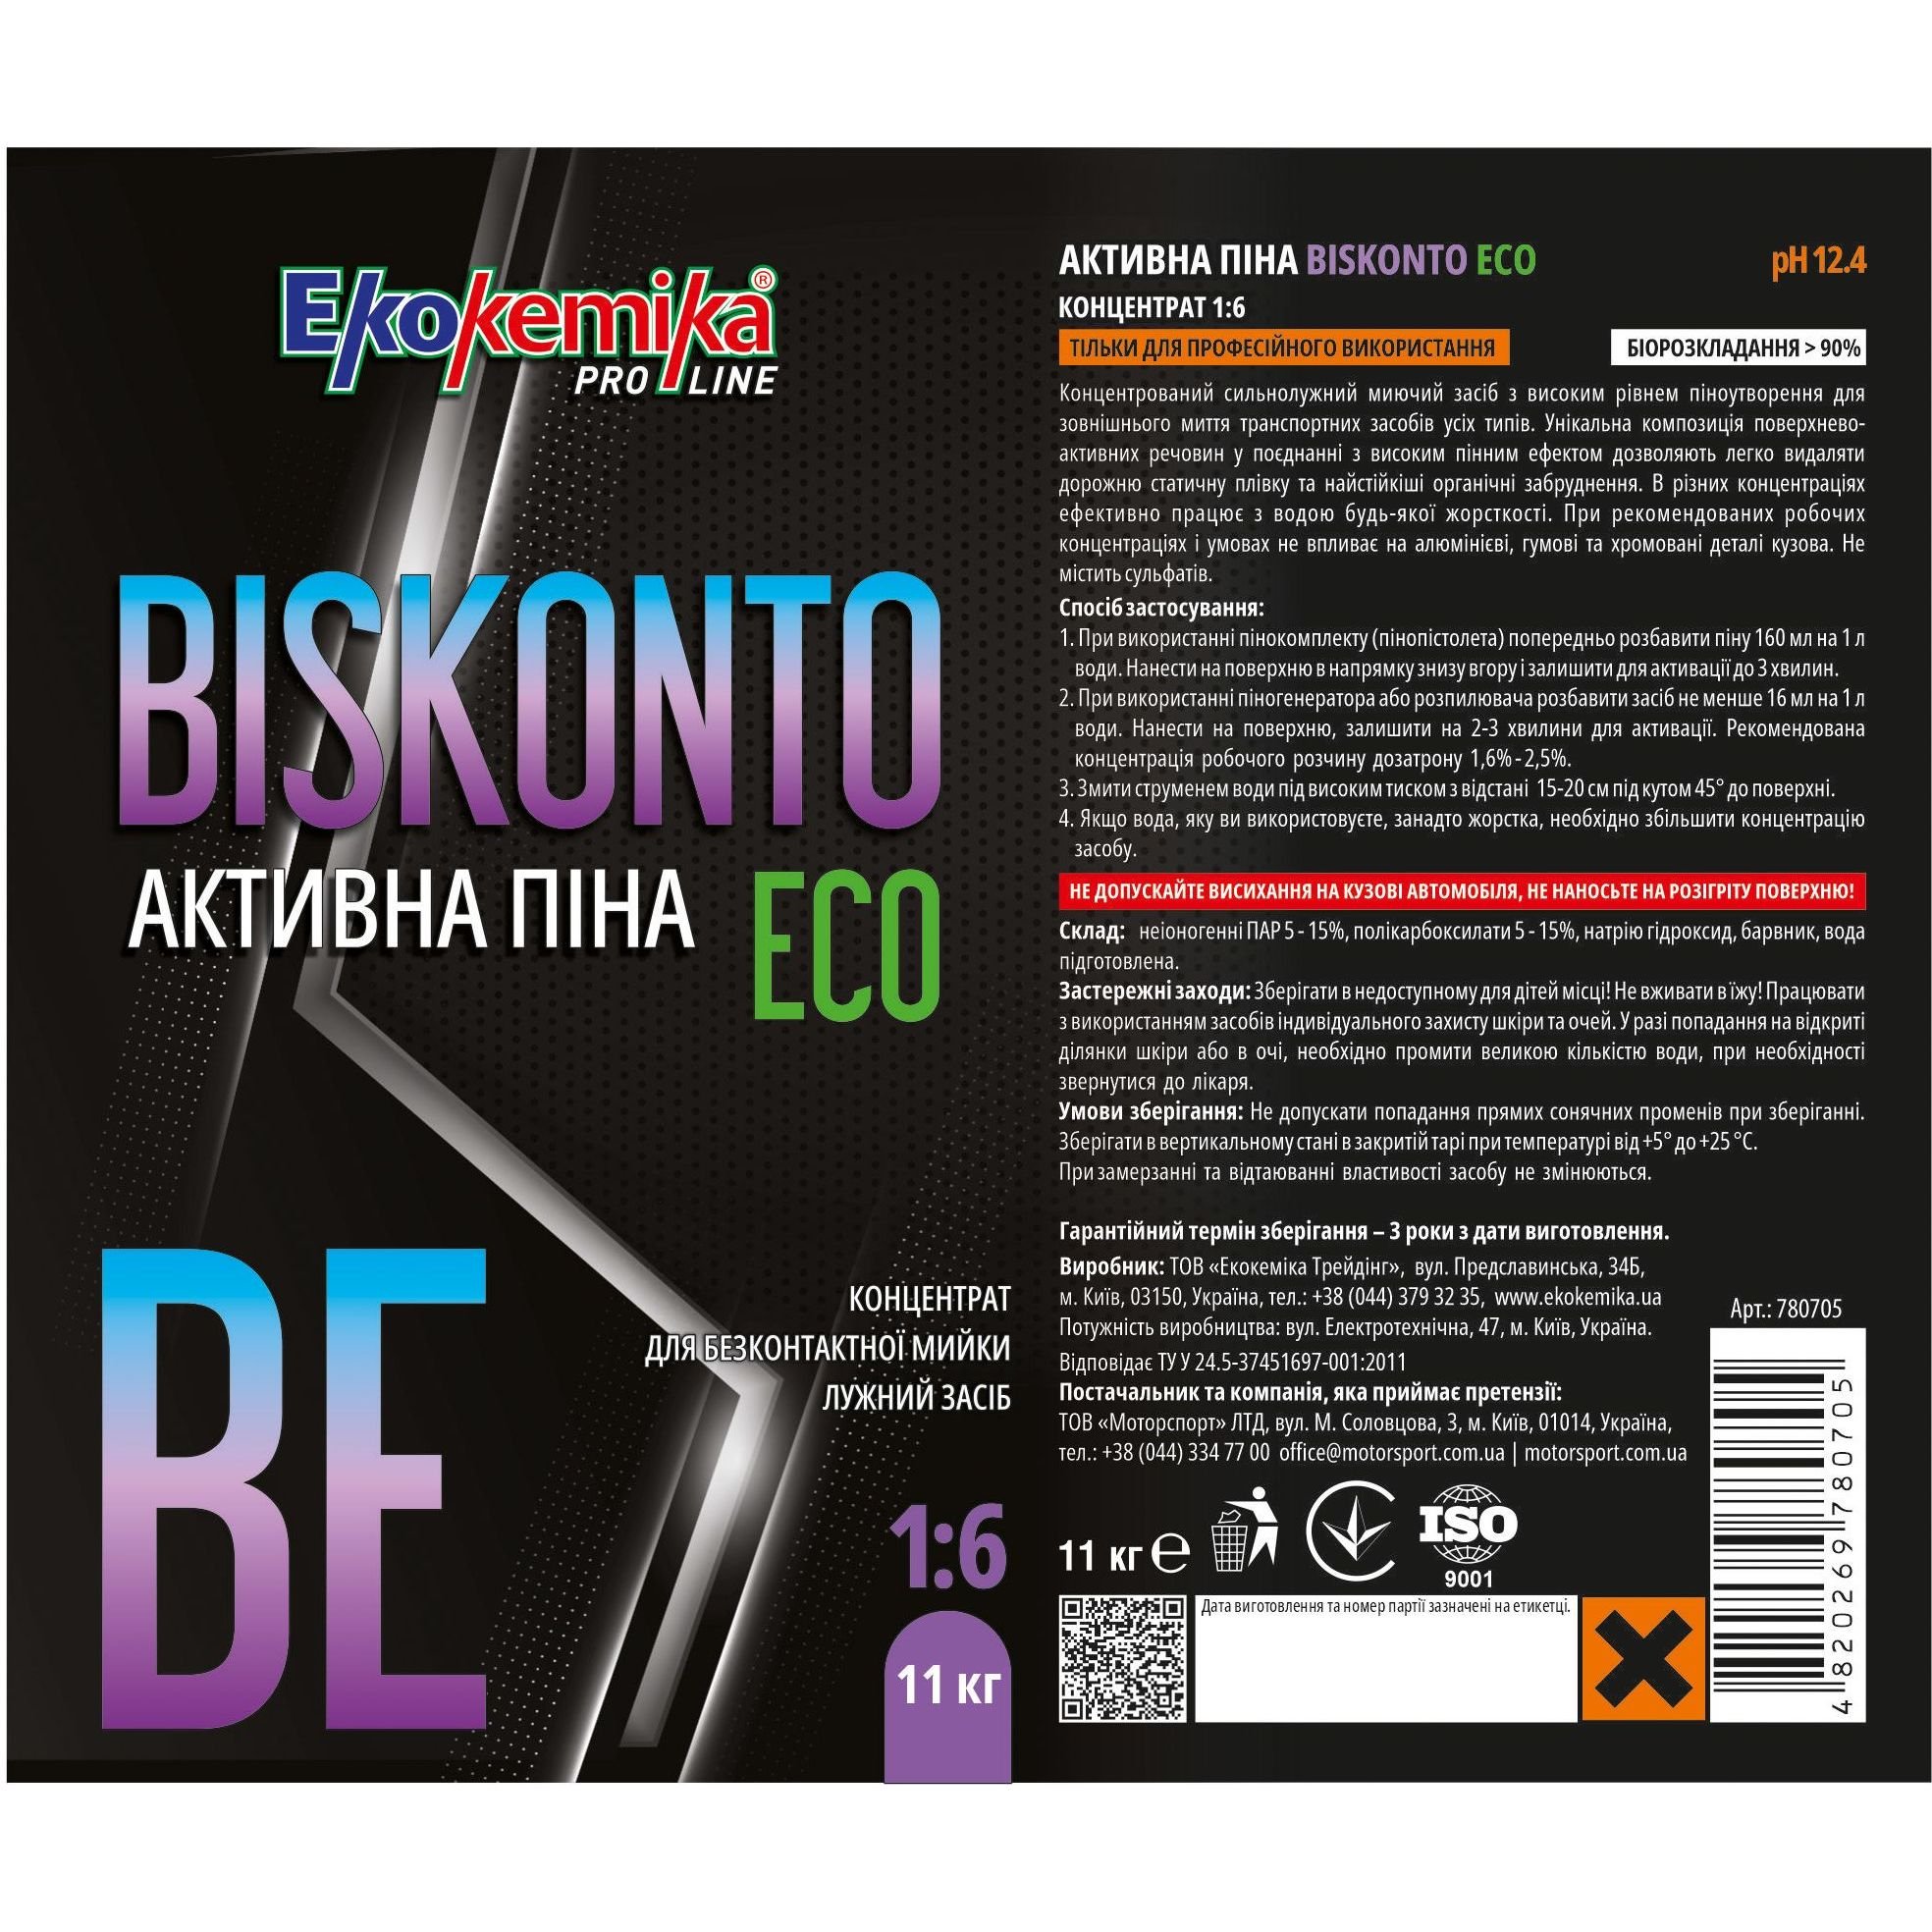 Активна піна Ekokemika Pro Line Biskonto Eco 1:6, 11 кг (780705) - фото 2